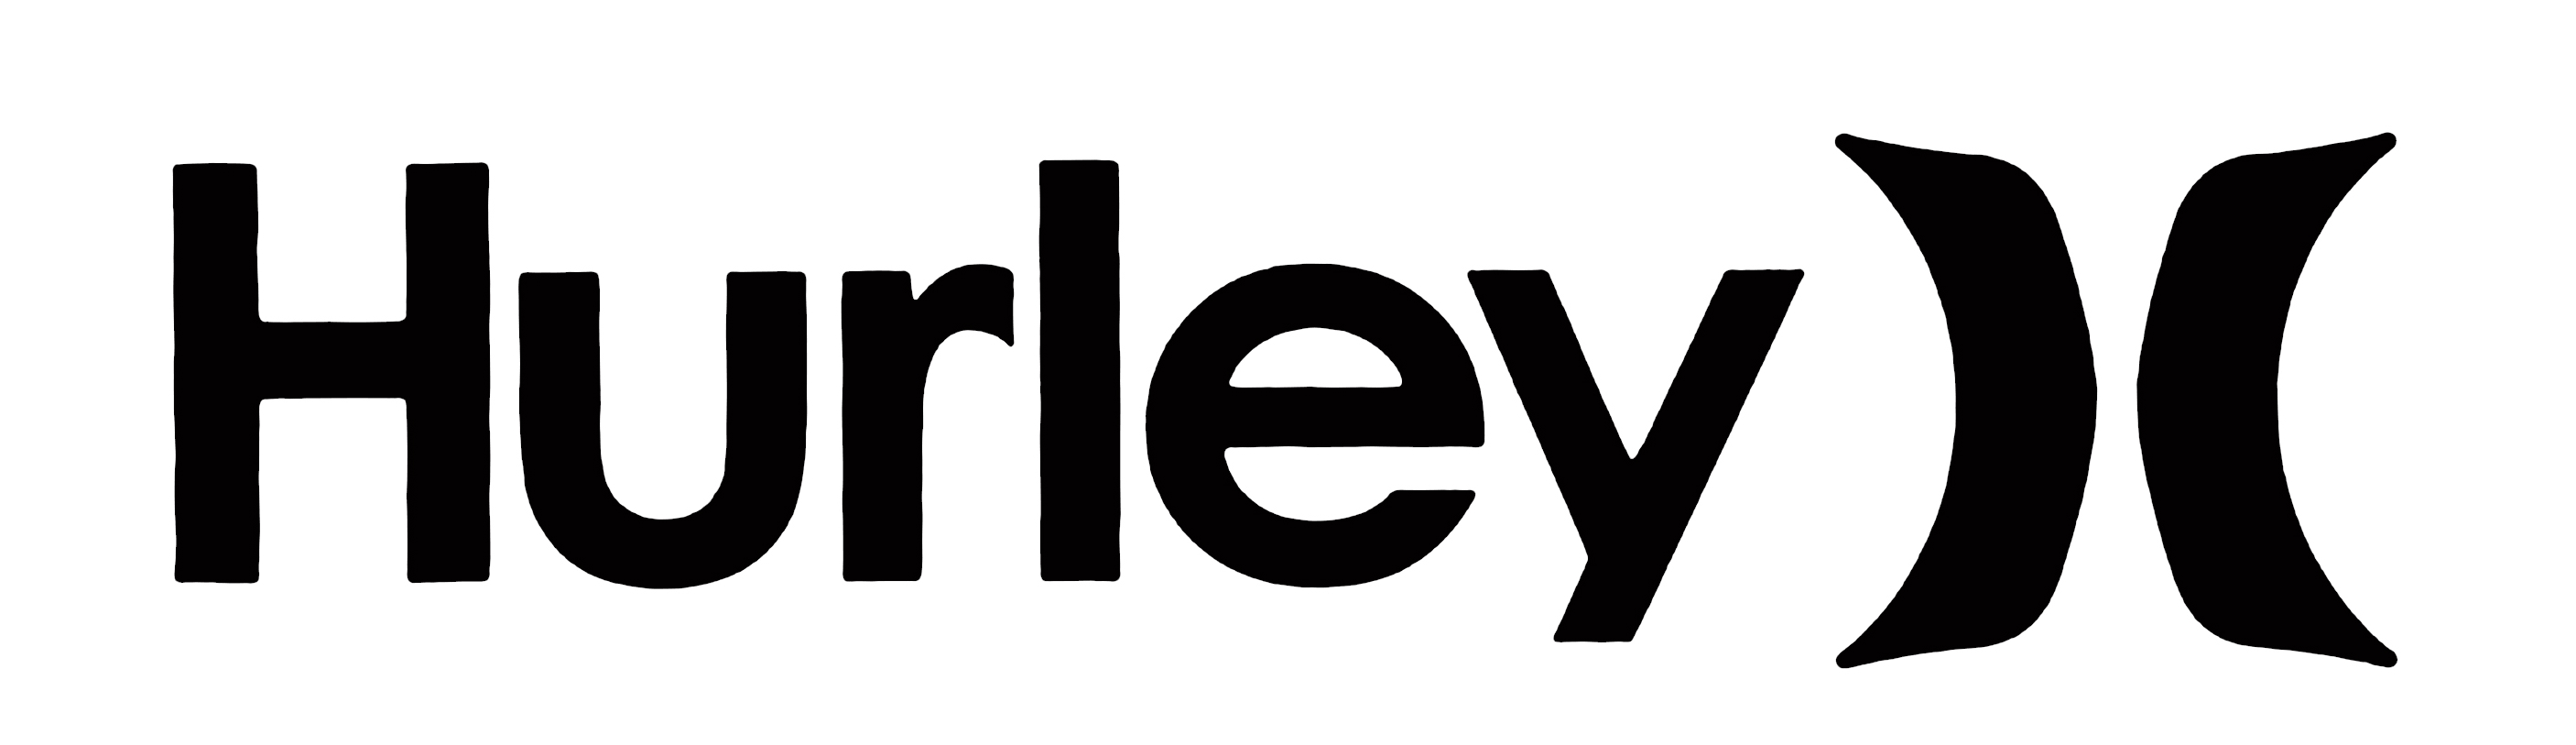 Hurley Logo Wallpaper